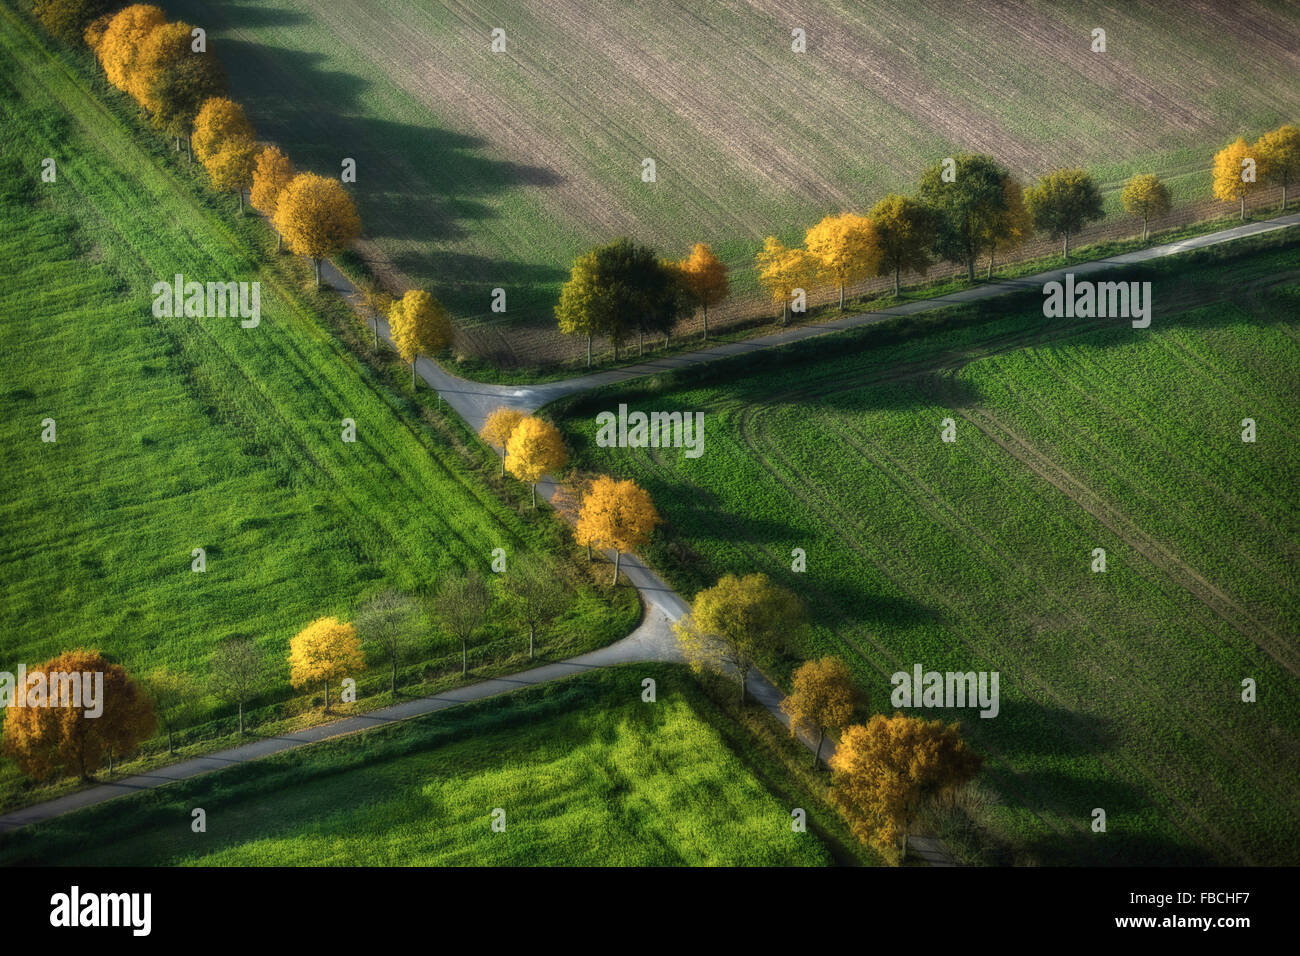 Vista aérea de la avenida arbolada, caminos de tierra, encrucijada, cruzado doble, otoño de revival, hojas de otoño, agricultura, campos Foto de stock